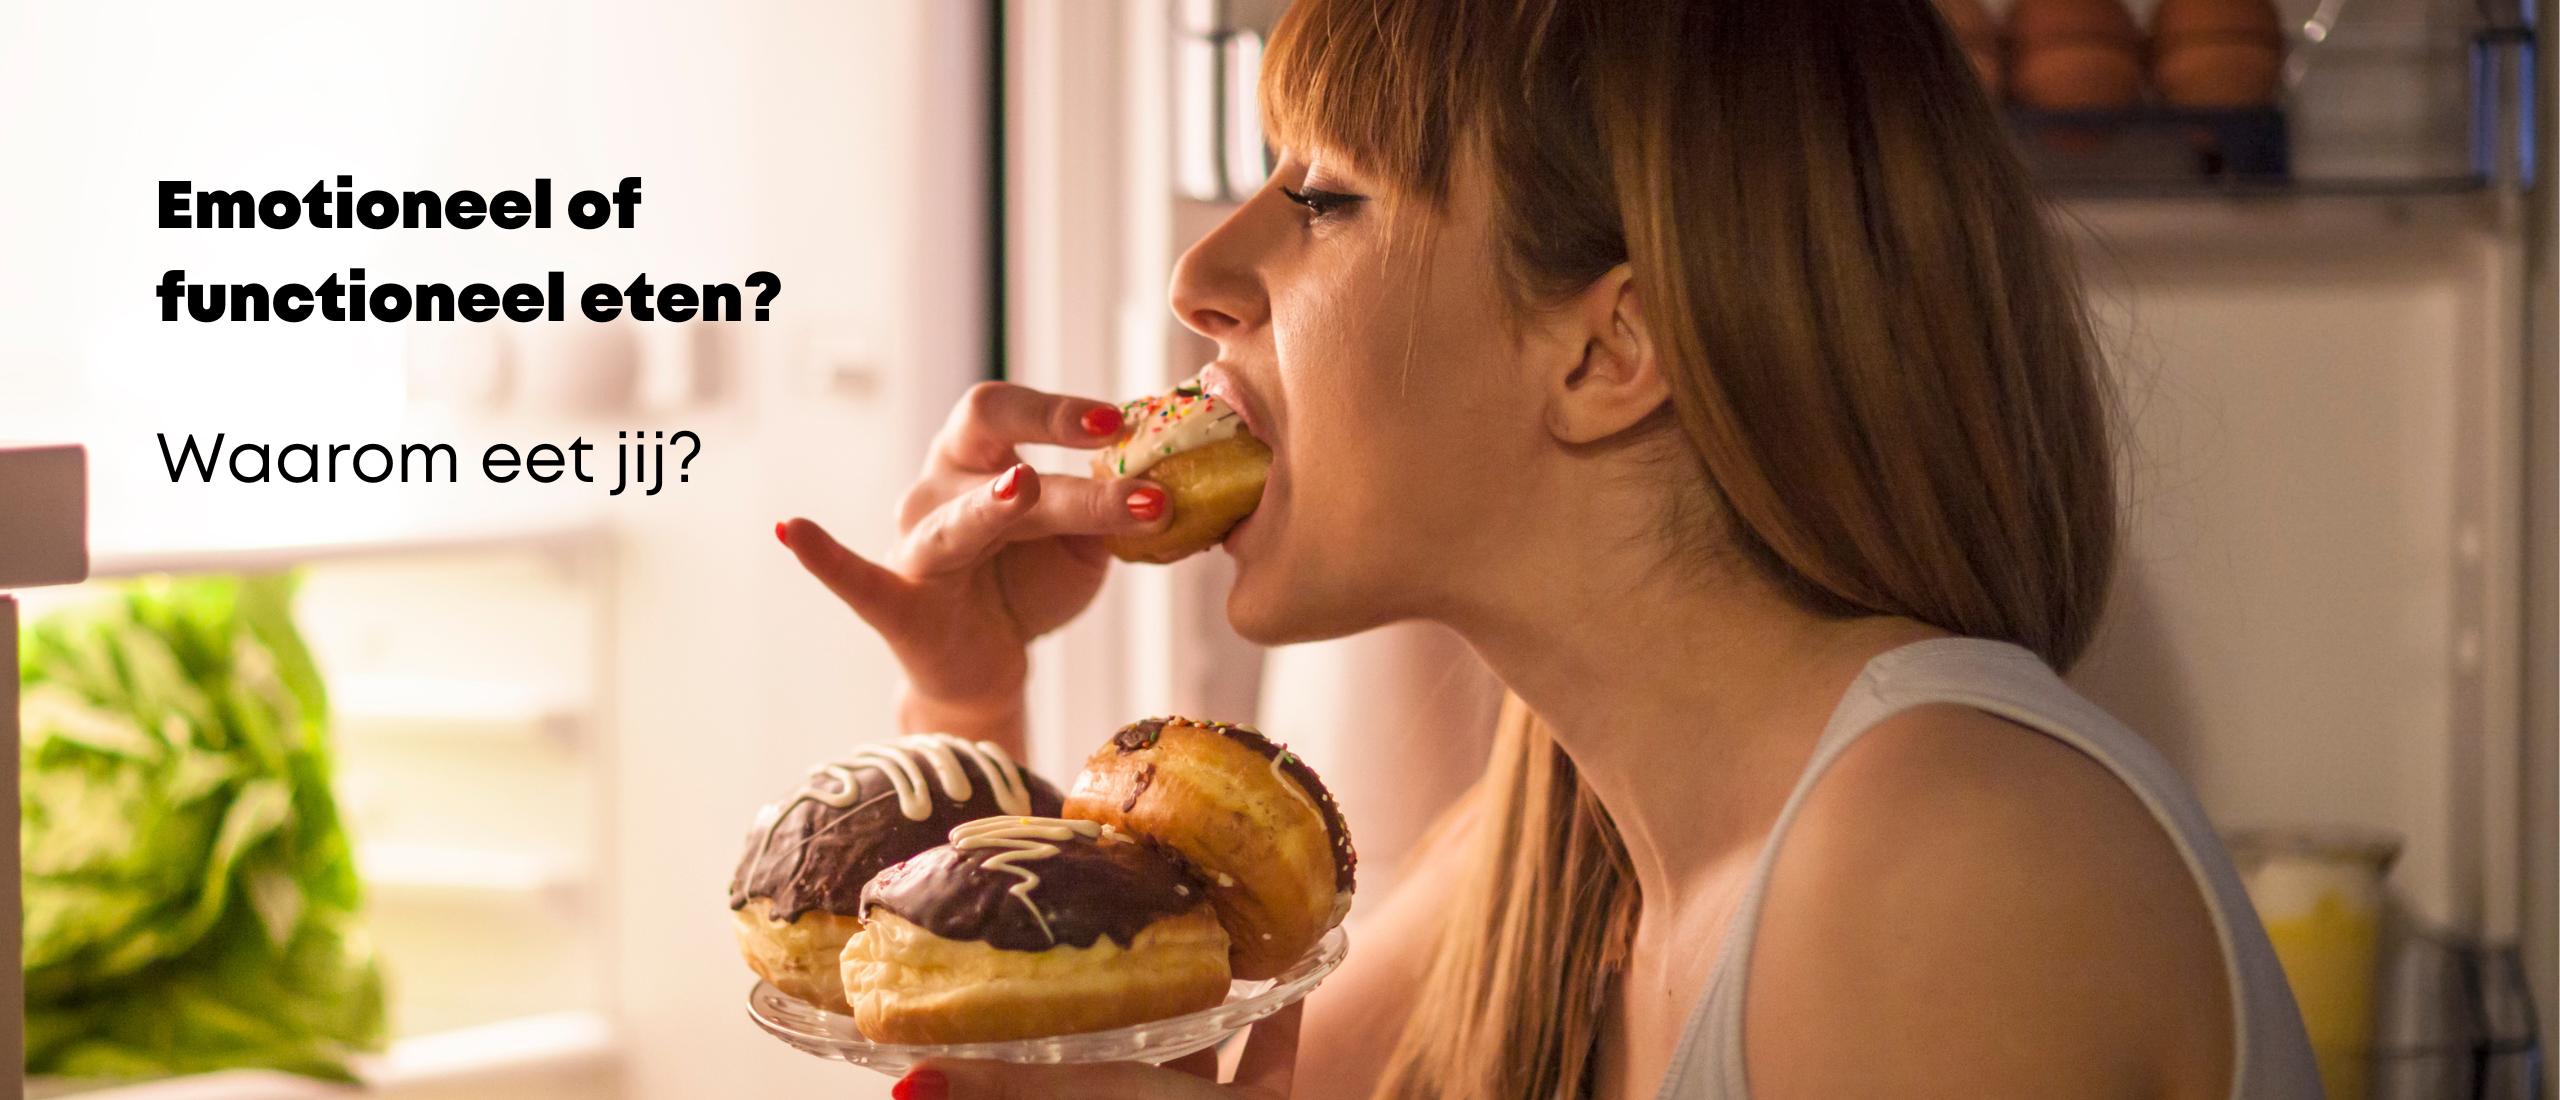 Emotioneel of functioneel eten? Waarom eet jij?